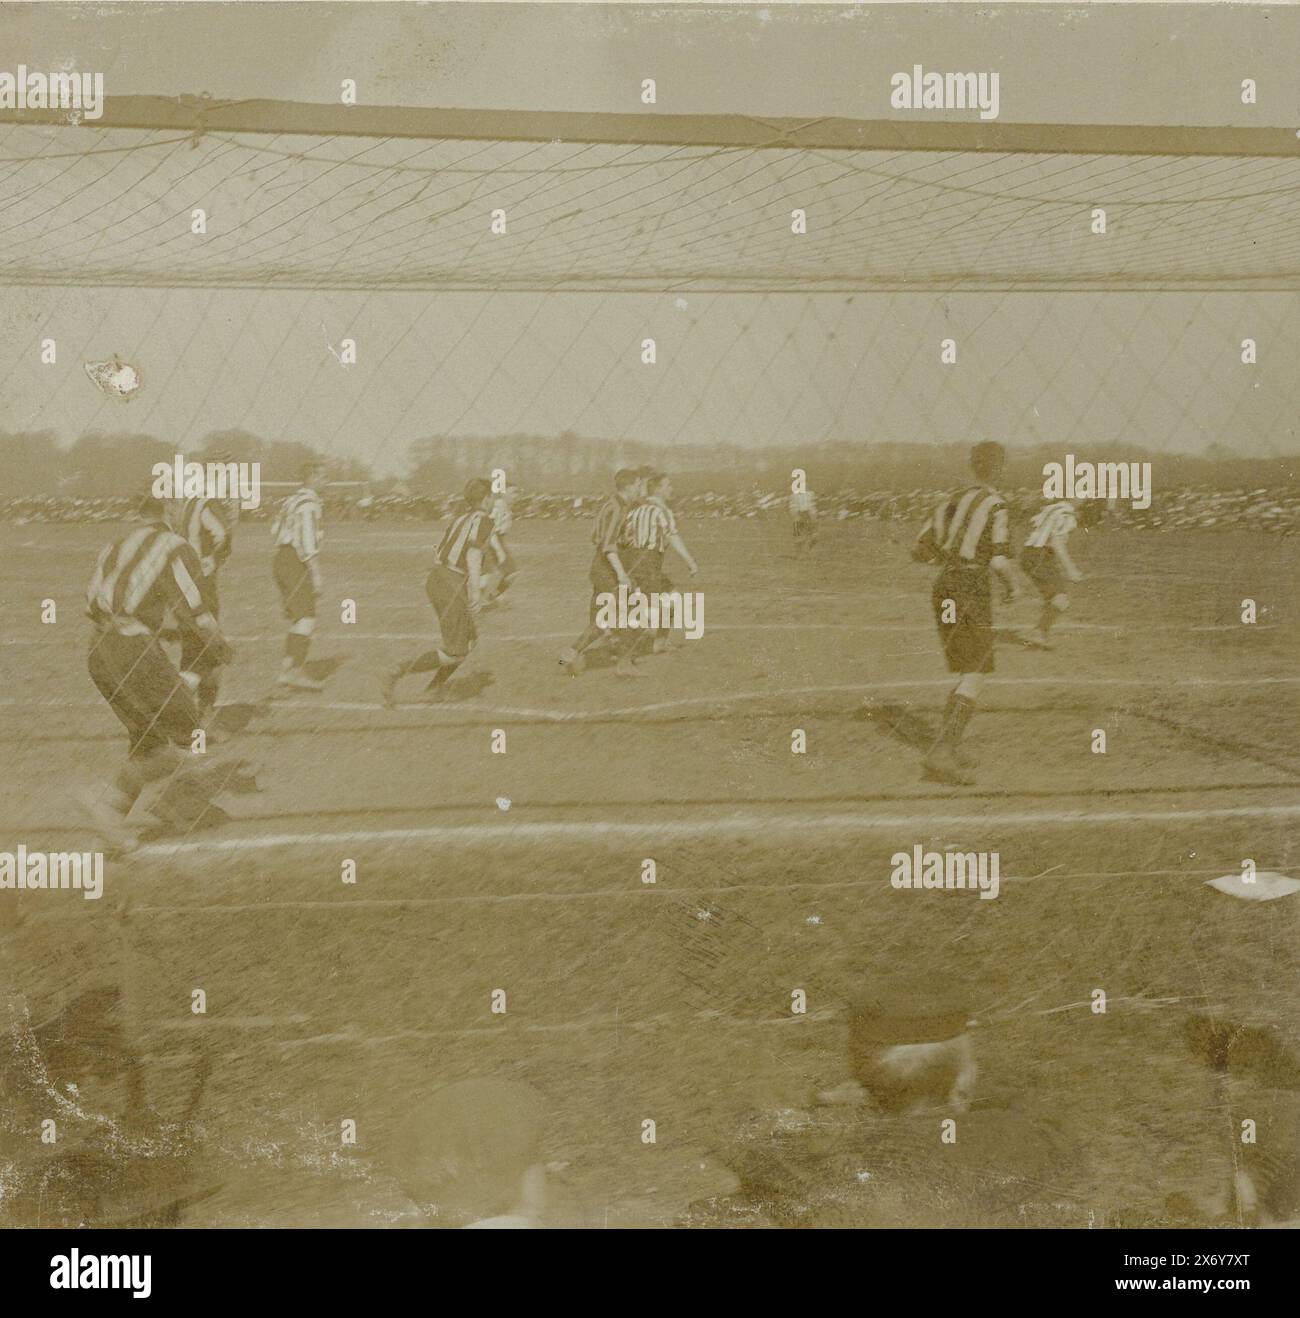 Giocatori di calcio dell'HVV durante una partita, giocatori di calcio sul campo durante una partita, stereografo, Geldolph Adriaan Kessler (Dolph), (possibilmente), Paesi Bassi, 1902, carta, altezza, 77 mm x larghezza, 156 mm Foto Stock